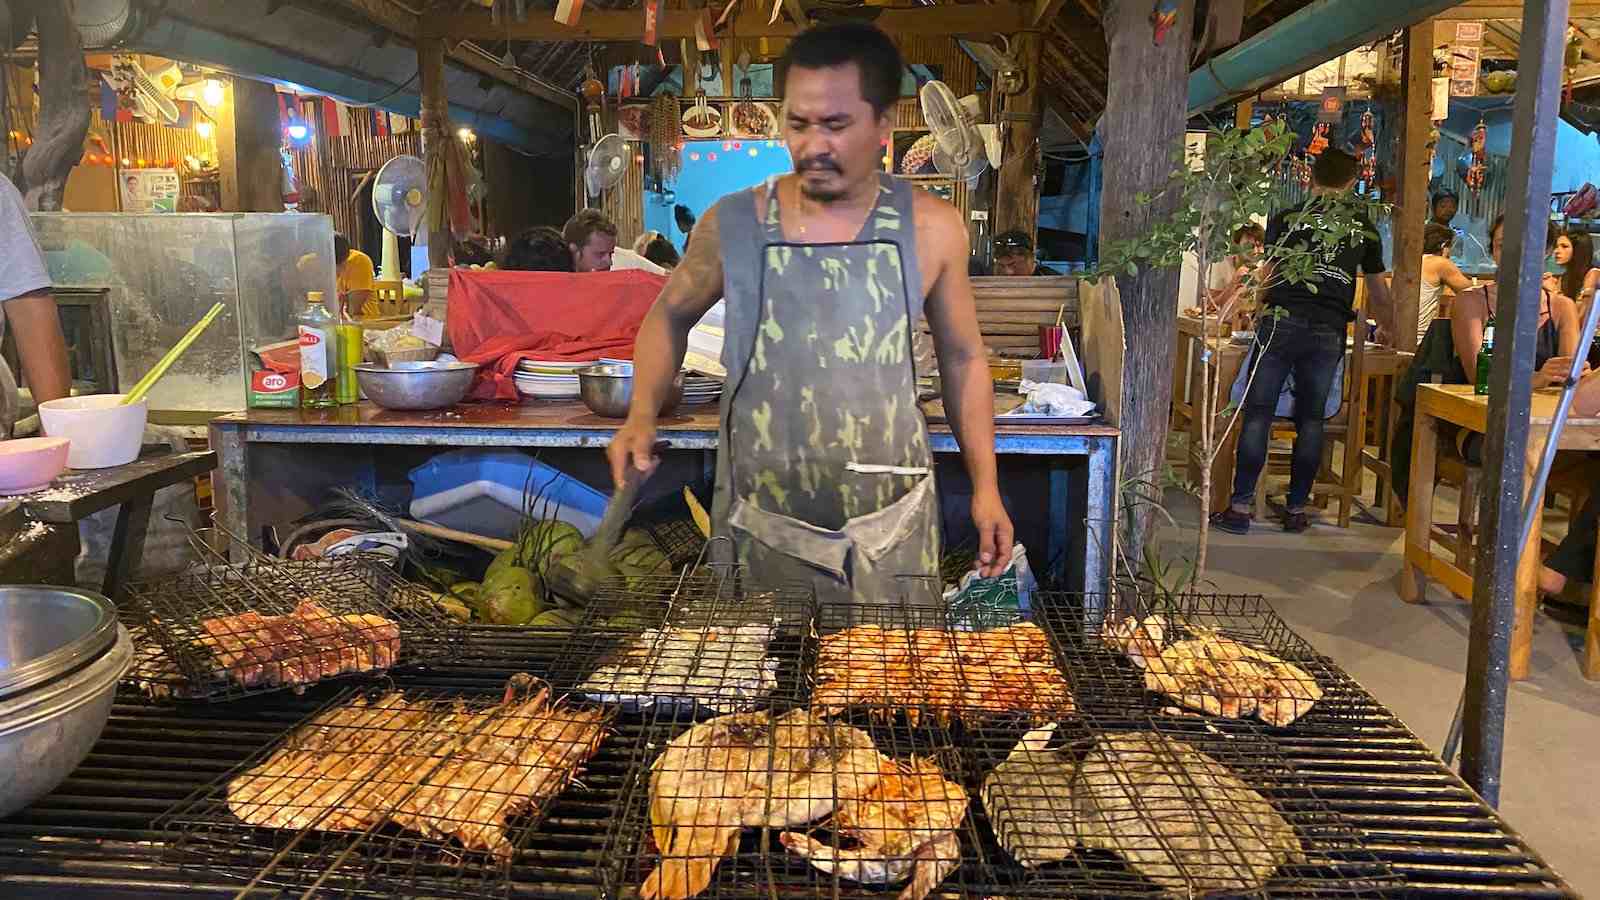 Pla pao é um prato de peixe inteiro salgado que é uma comida de rua comum no Laos